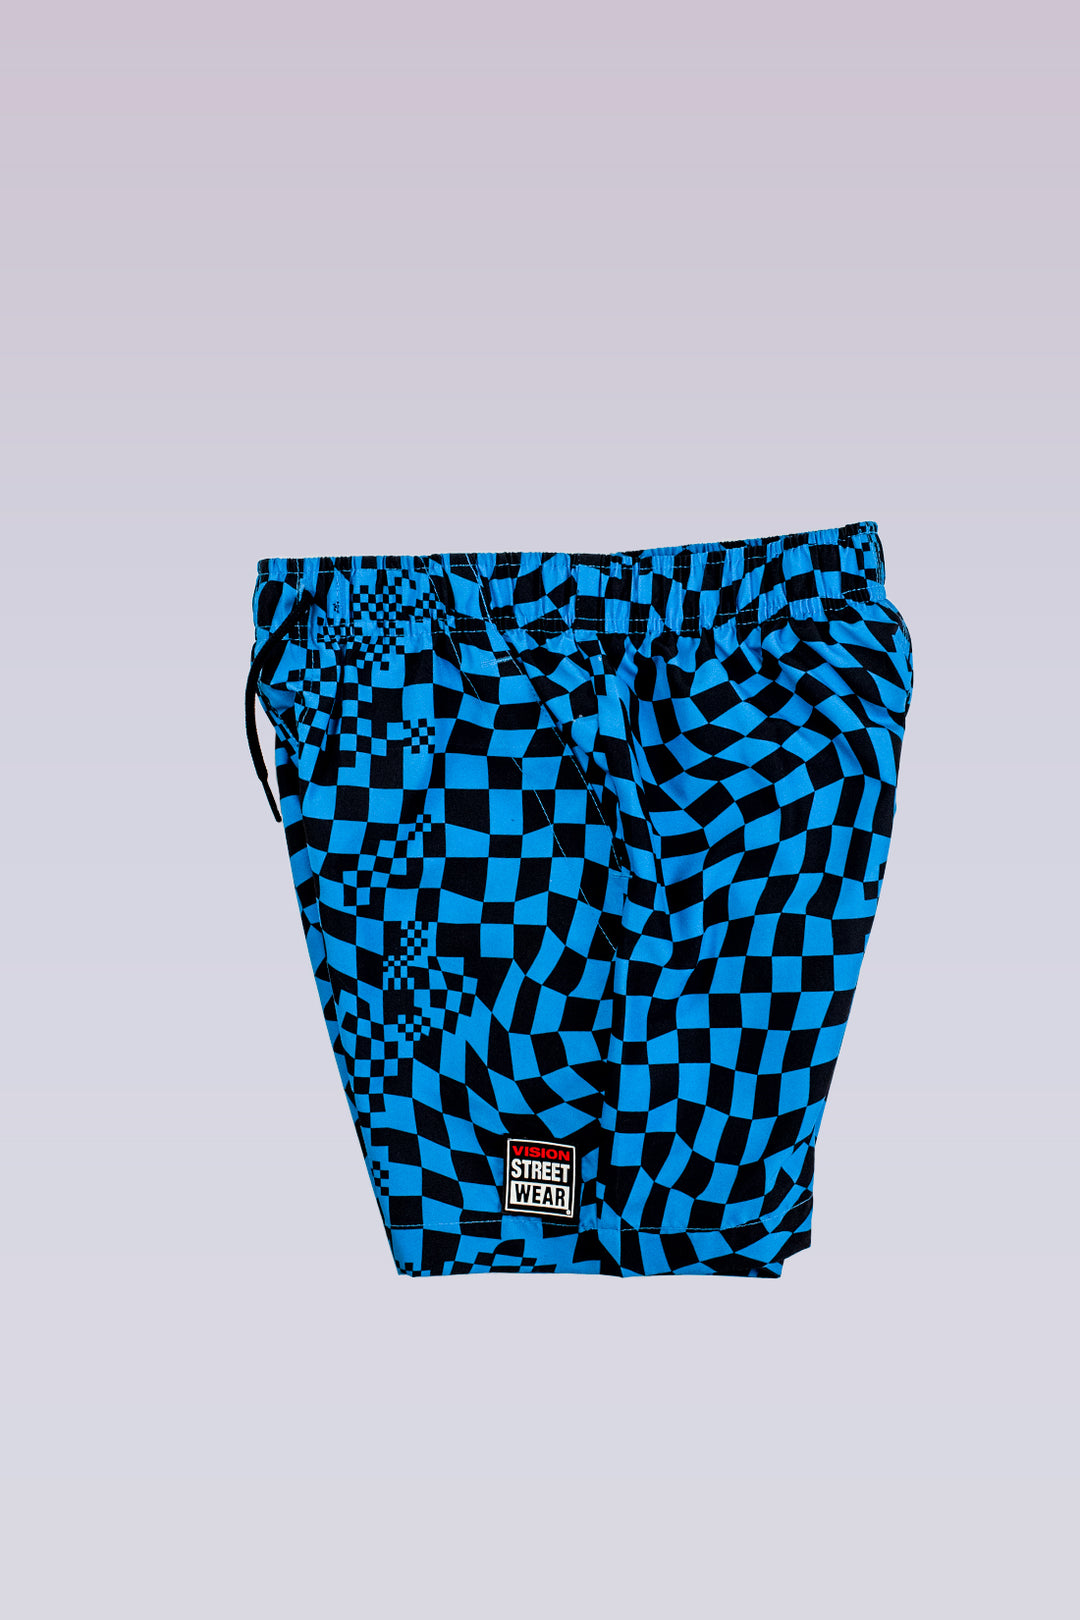 Kids' Aop Spiral Checkers Swim Shorts- Blue